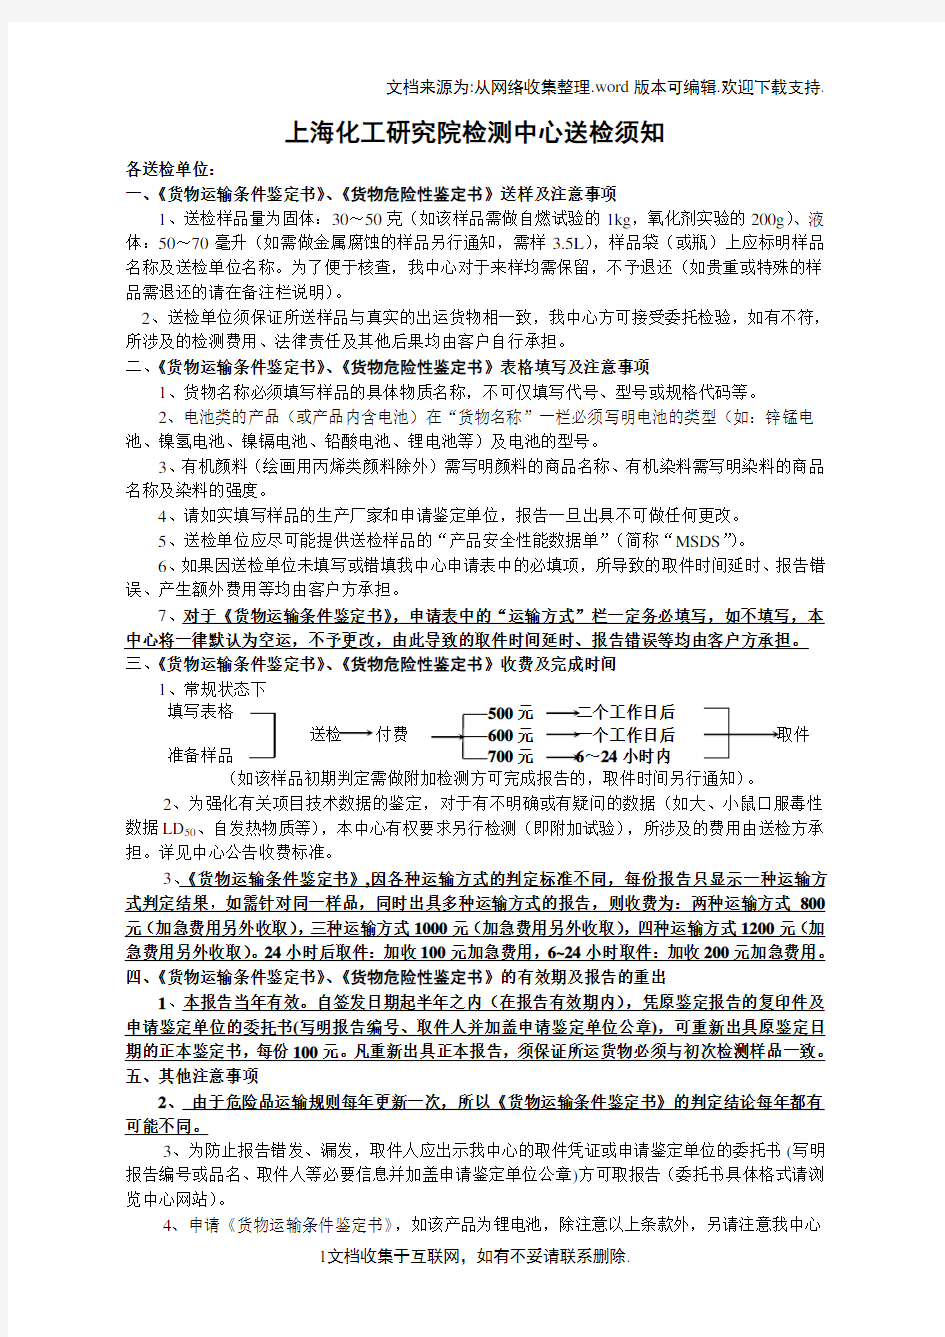 上海化工研究所鉴定申请书